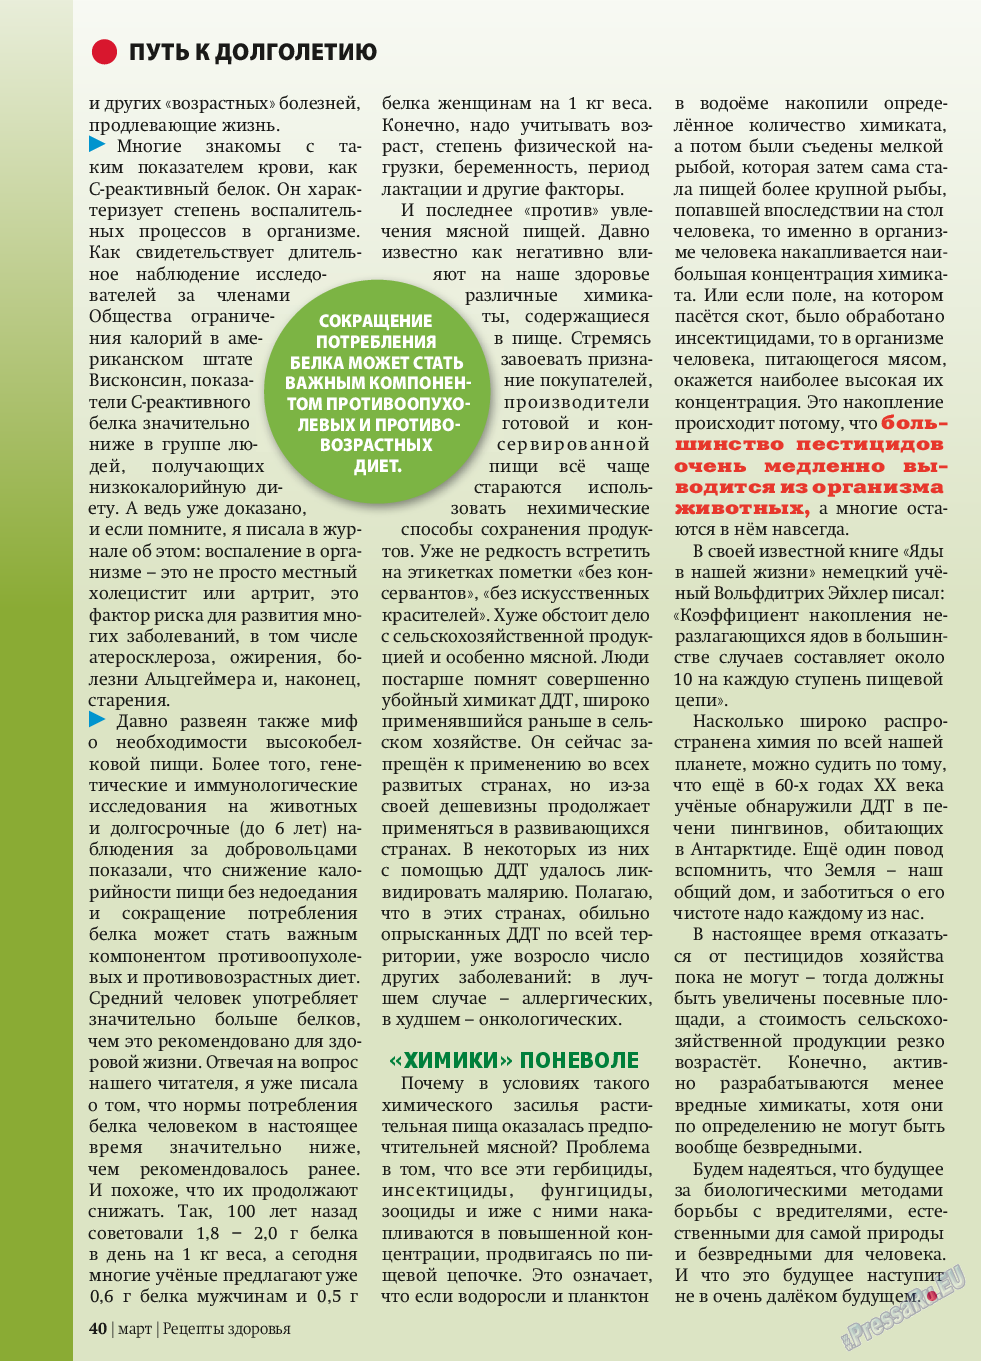 Рецепты здоровья, журнал. 2014 №58 стр.40